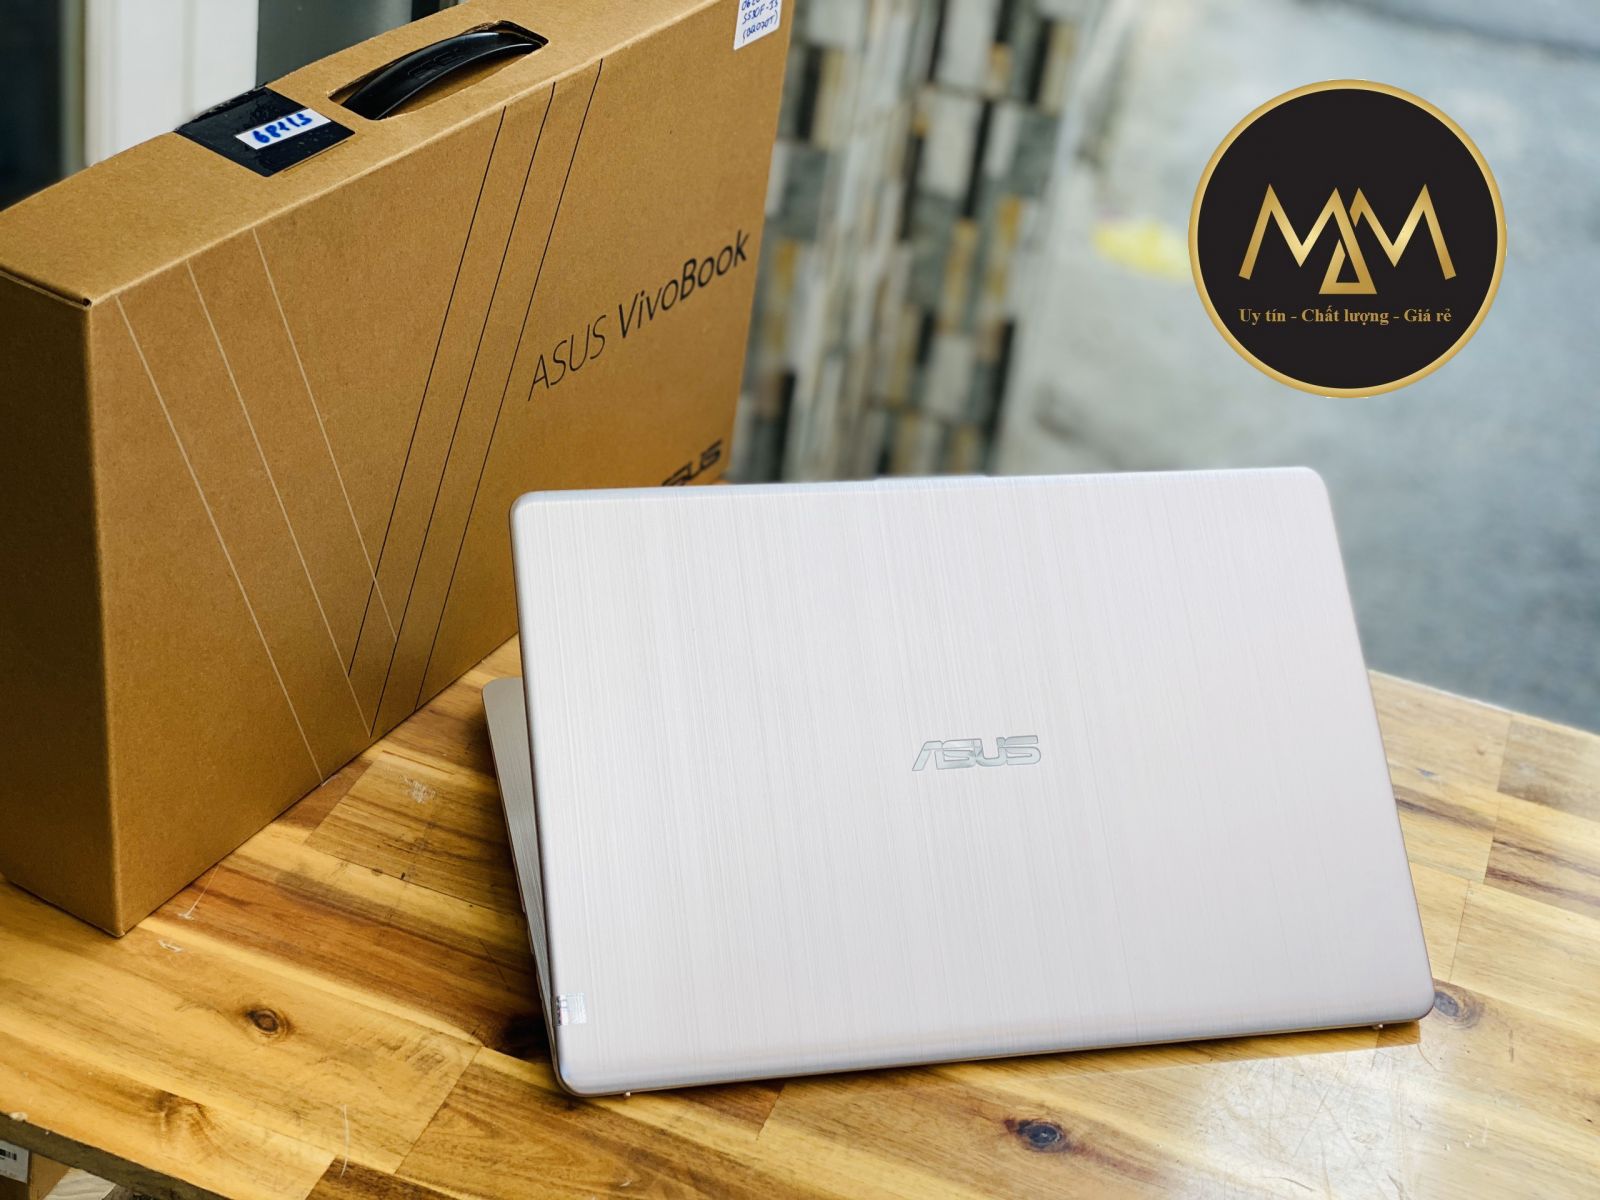 Laptop cũ uy tín quận Tân Bình, laptop cũ giá rẻ quận Tân Bình